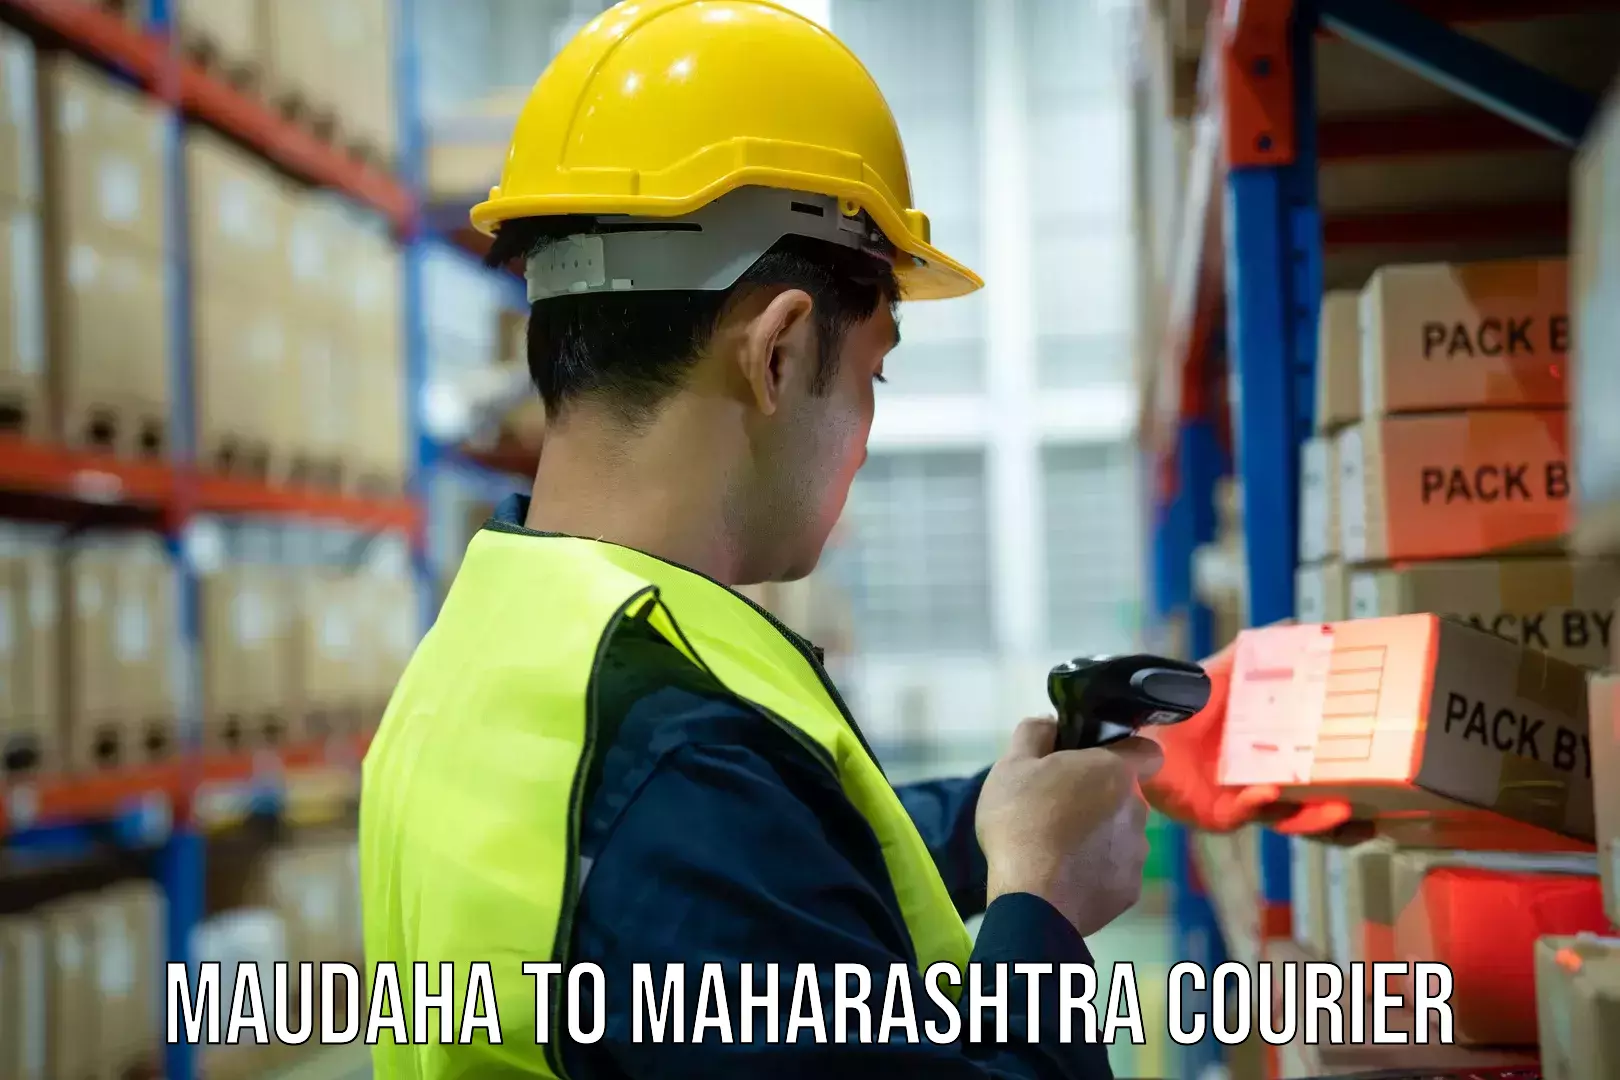 Nationwide shipping capabilities Maudaha to Maharashtra